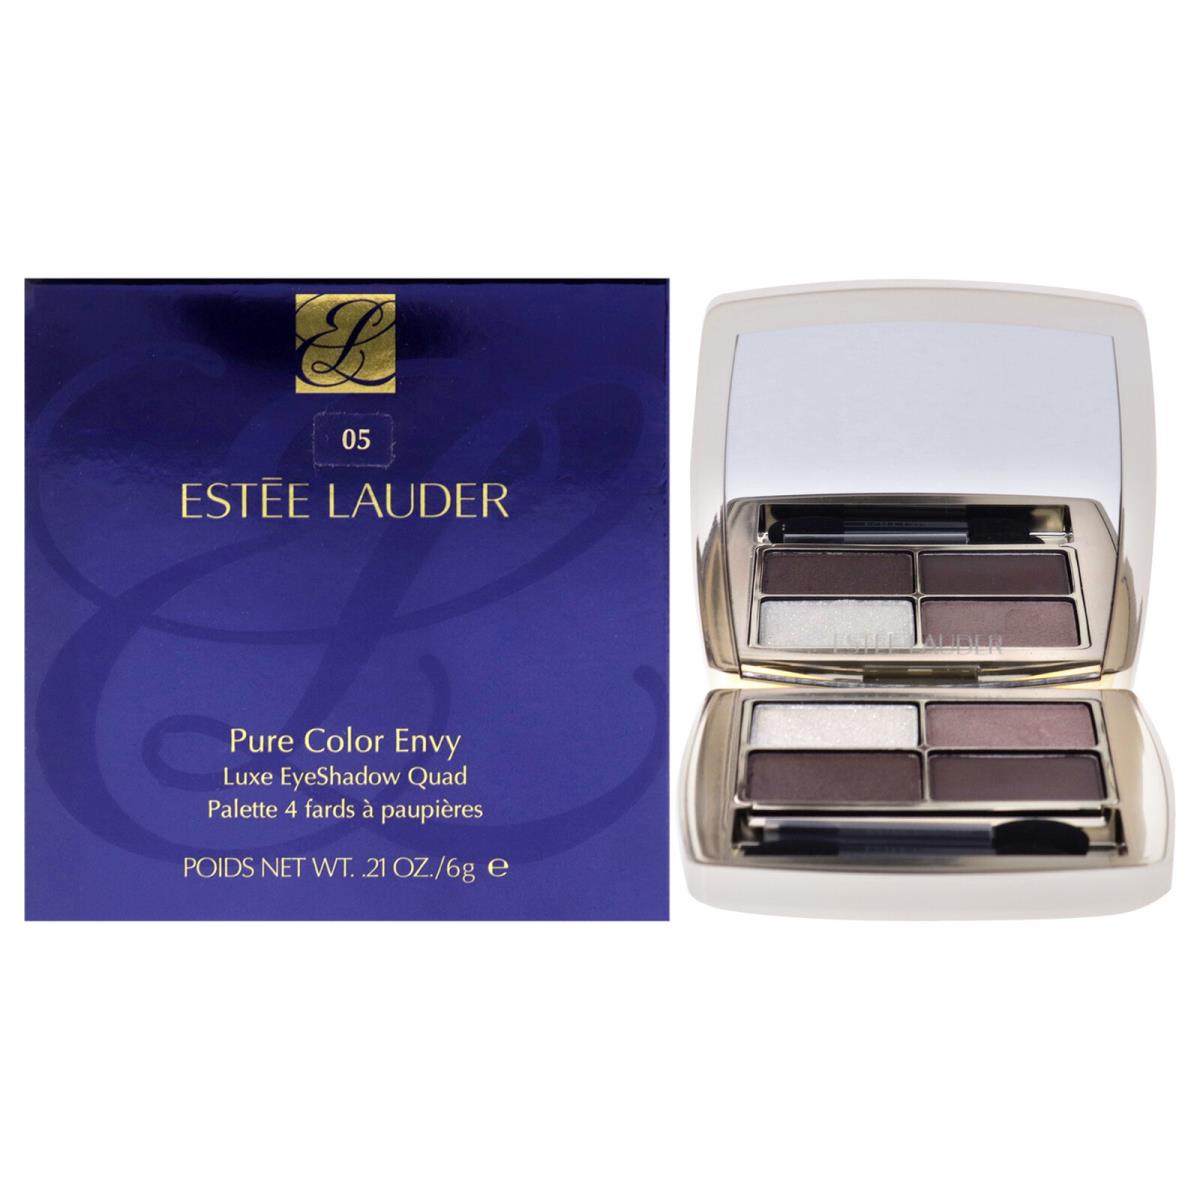 Pure Color Envy Luxe Eyeshadow Quad - 05 Grey Haze by Estee Lauder - 0.21 oz